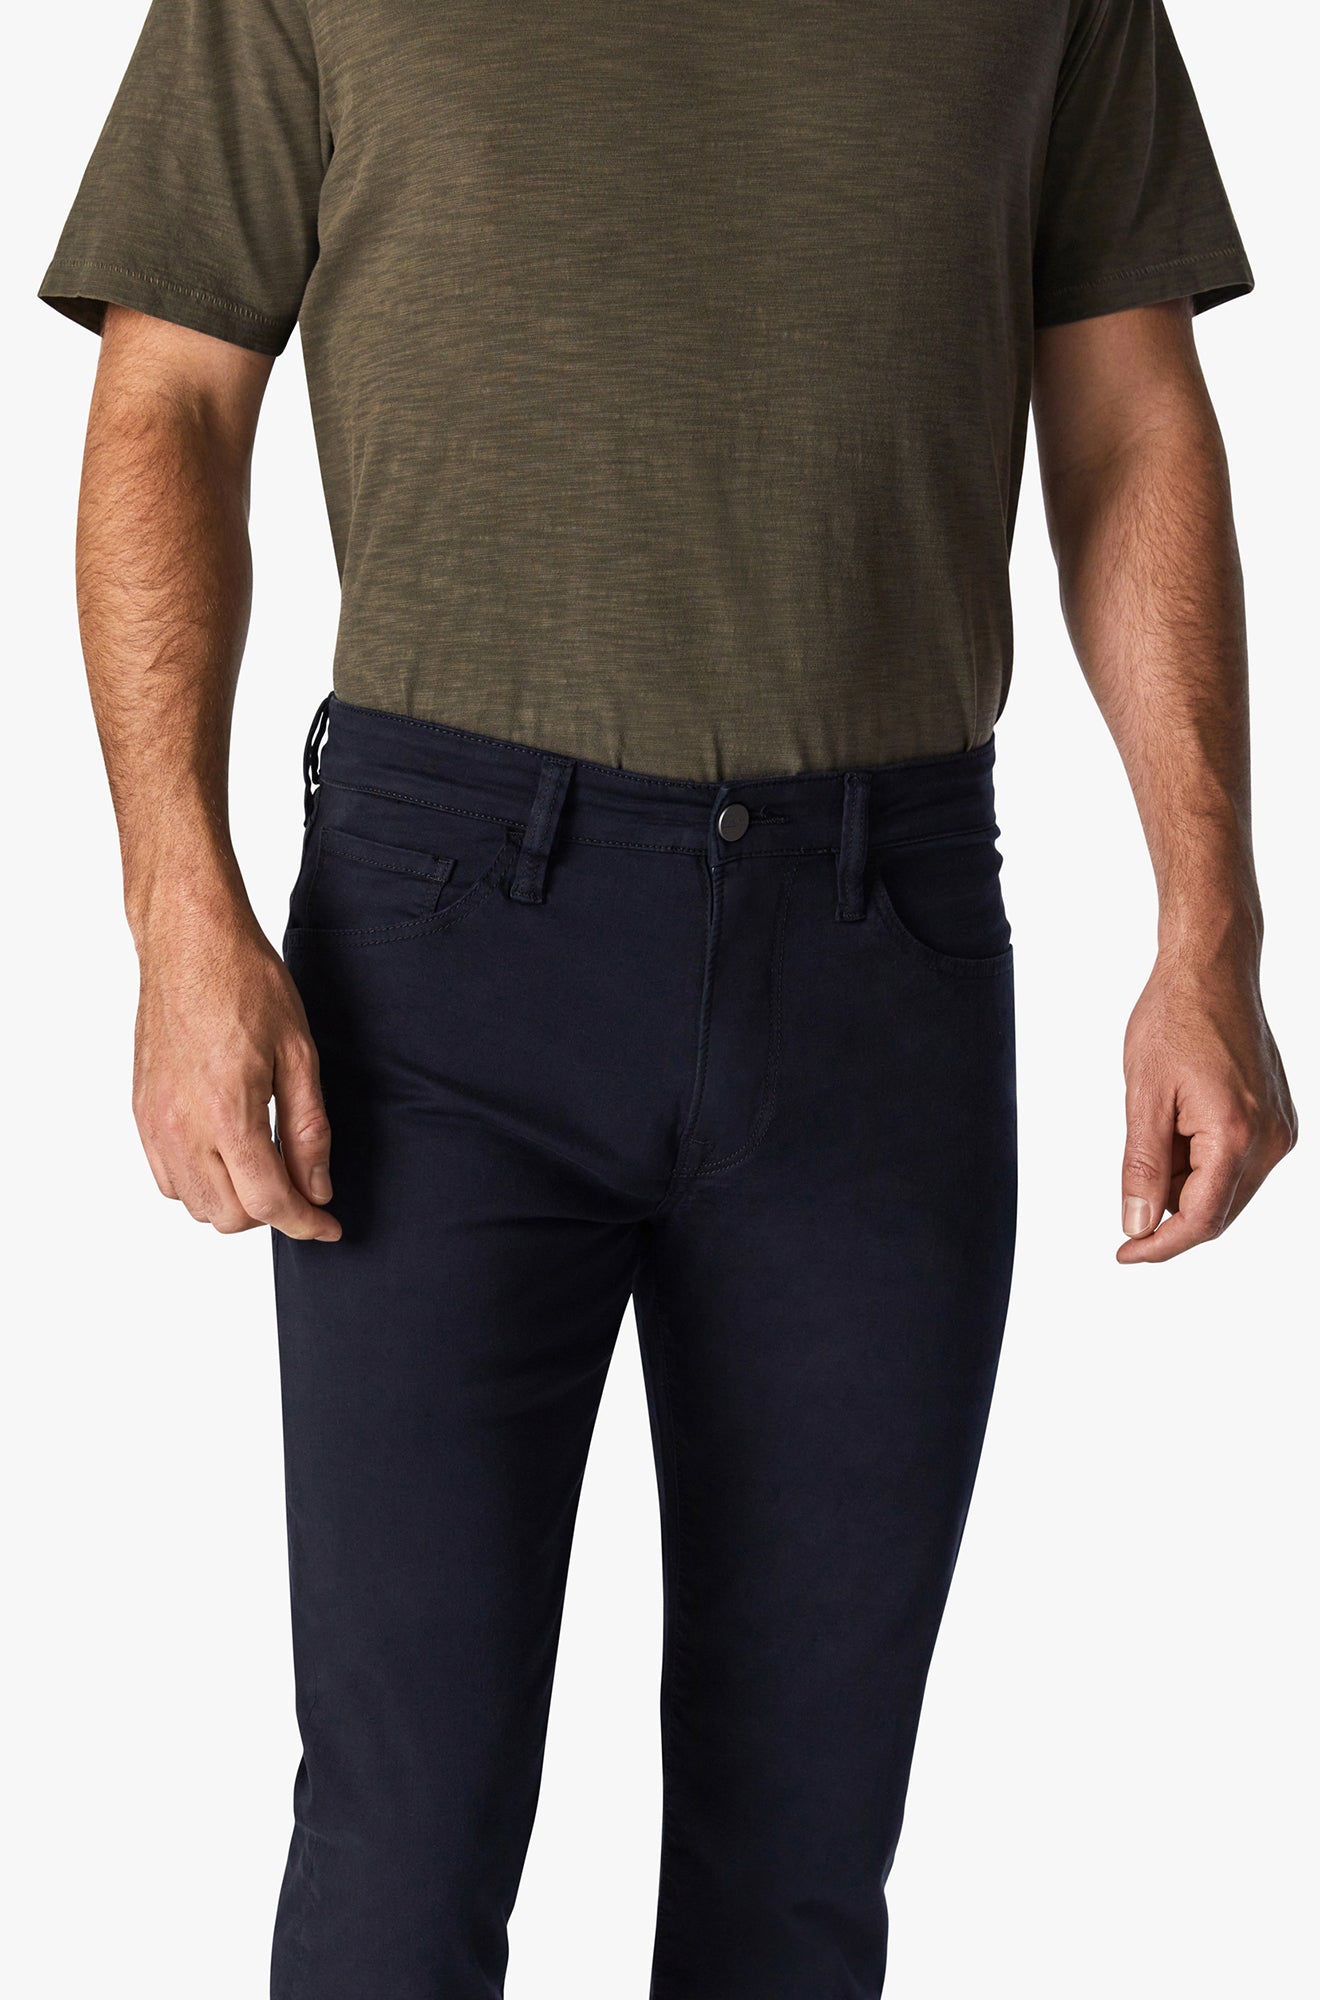 Pantalon pour homme par 34 Heritage | Courage/H0031018616 Sergé Bleu Marine/Navy Twill | Boutique Vvög, vêtements mode pour homme et femme